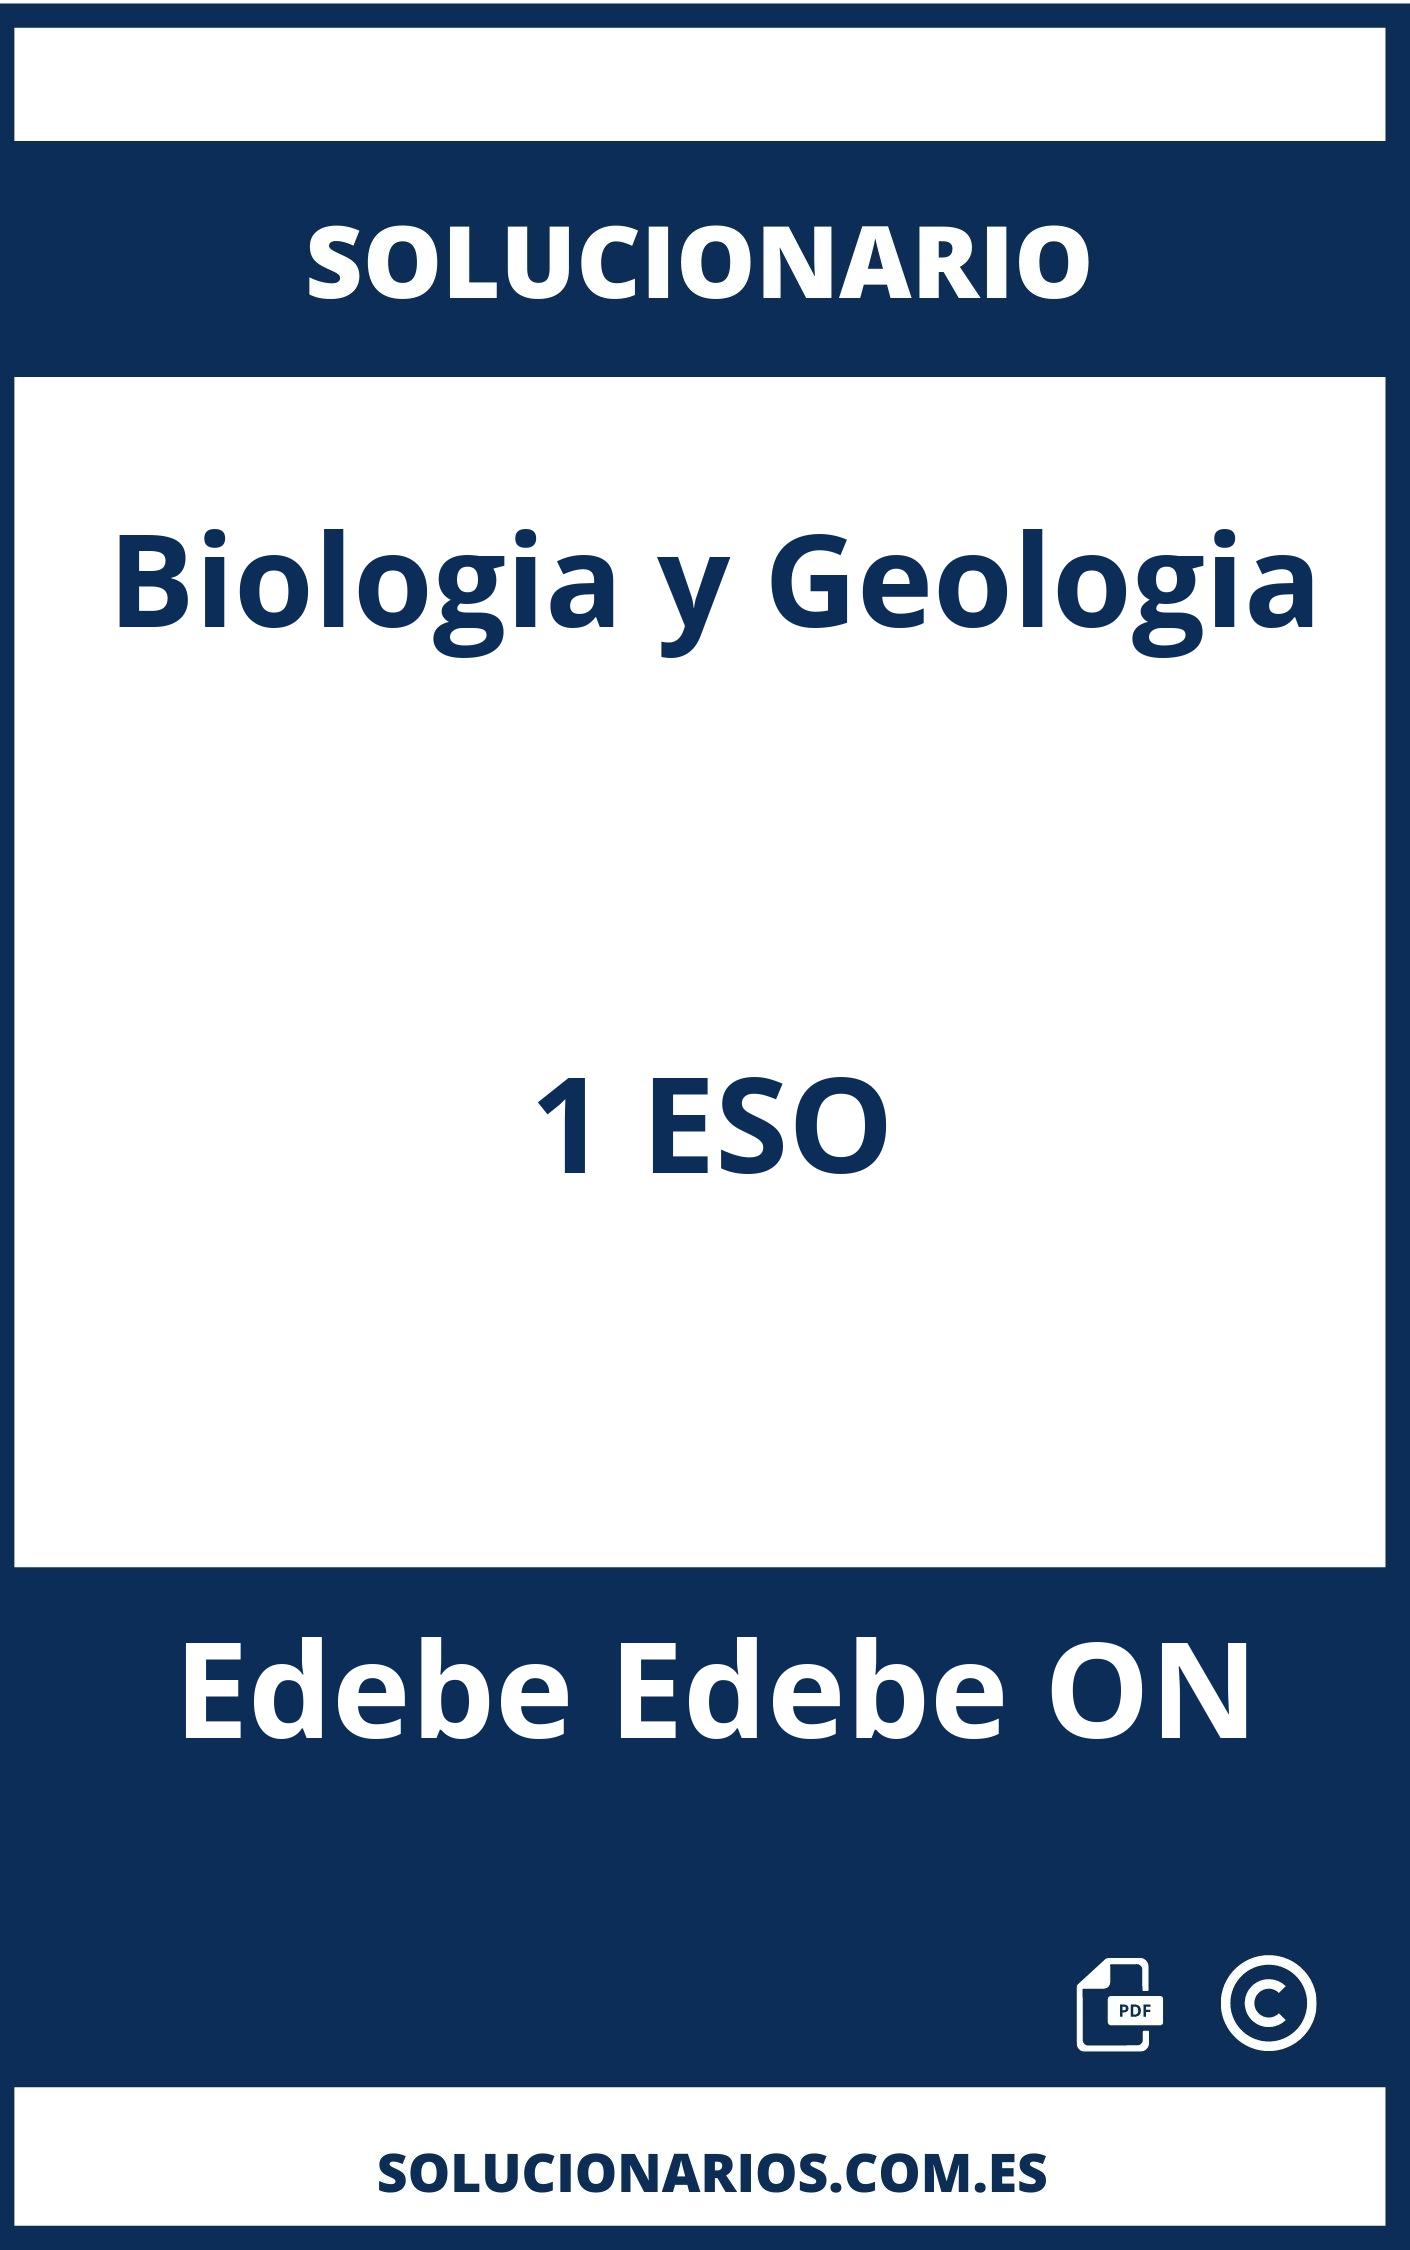 Solucionario Biologia y Geologia 1 ESO Edebe Edebe ON